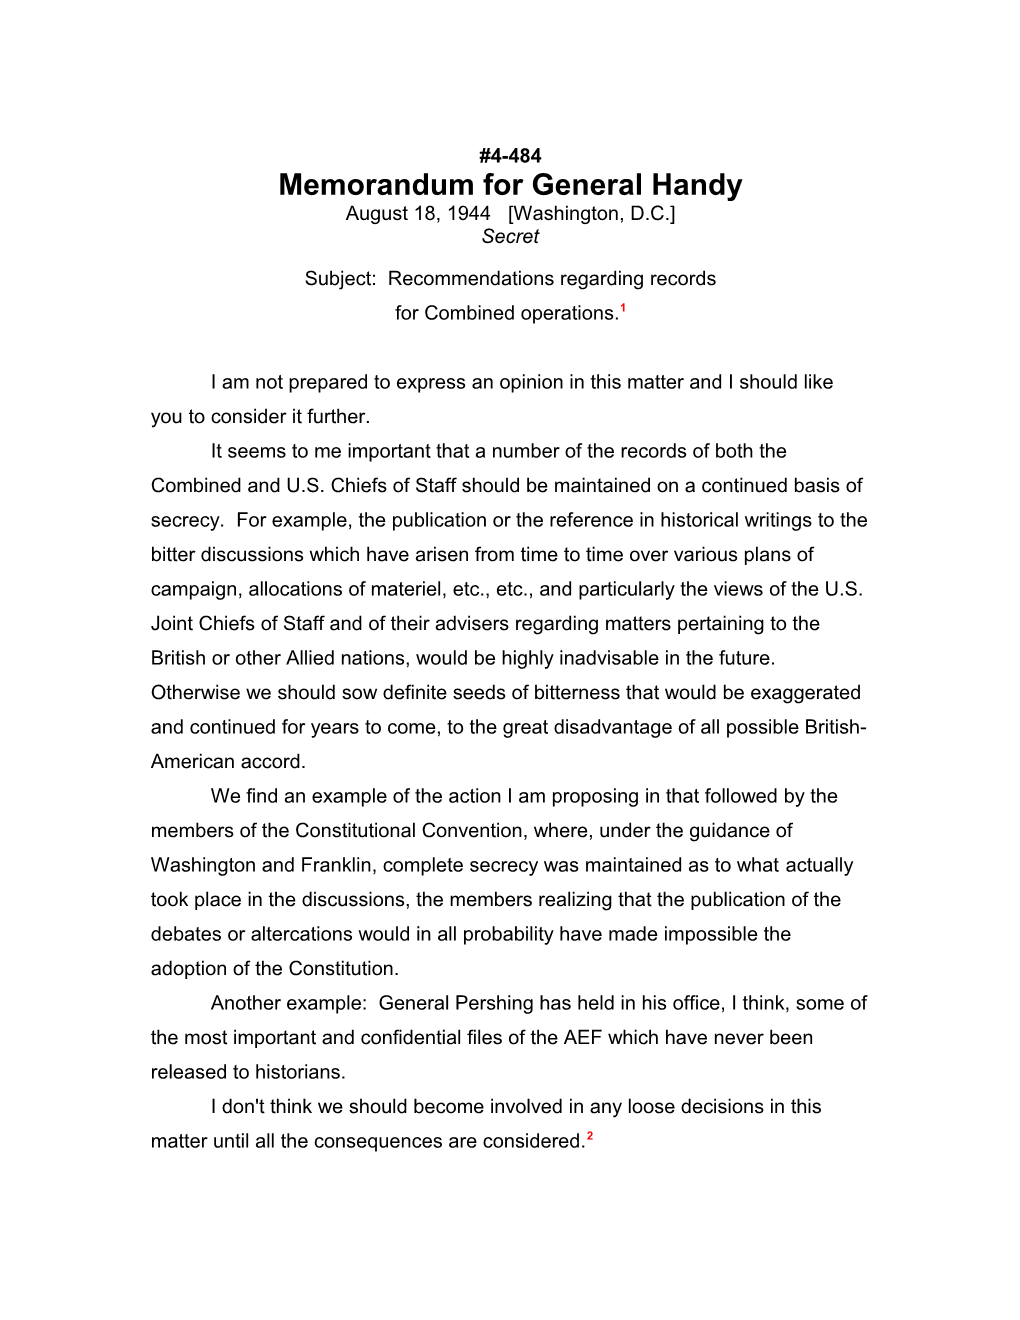 Memorandum for General Handy